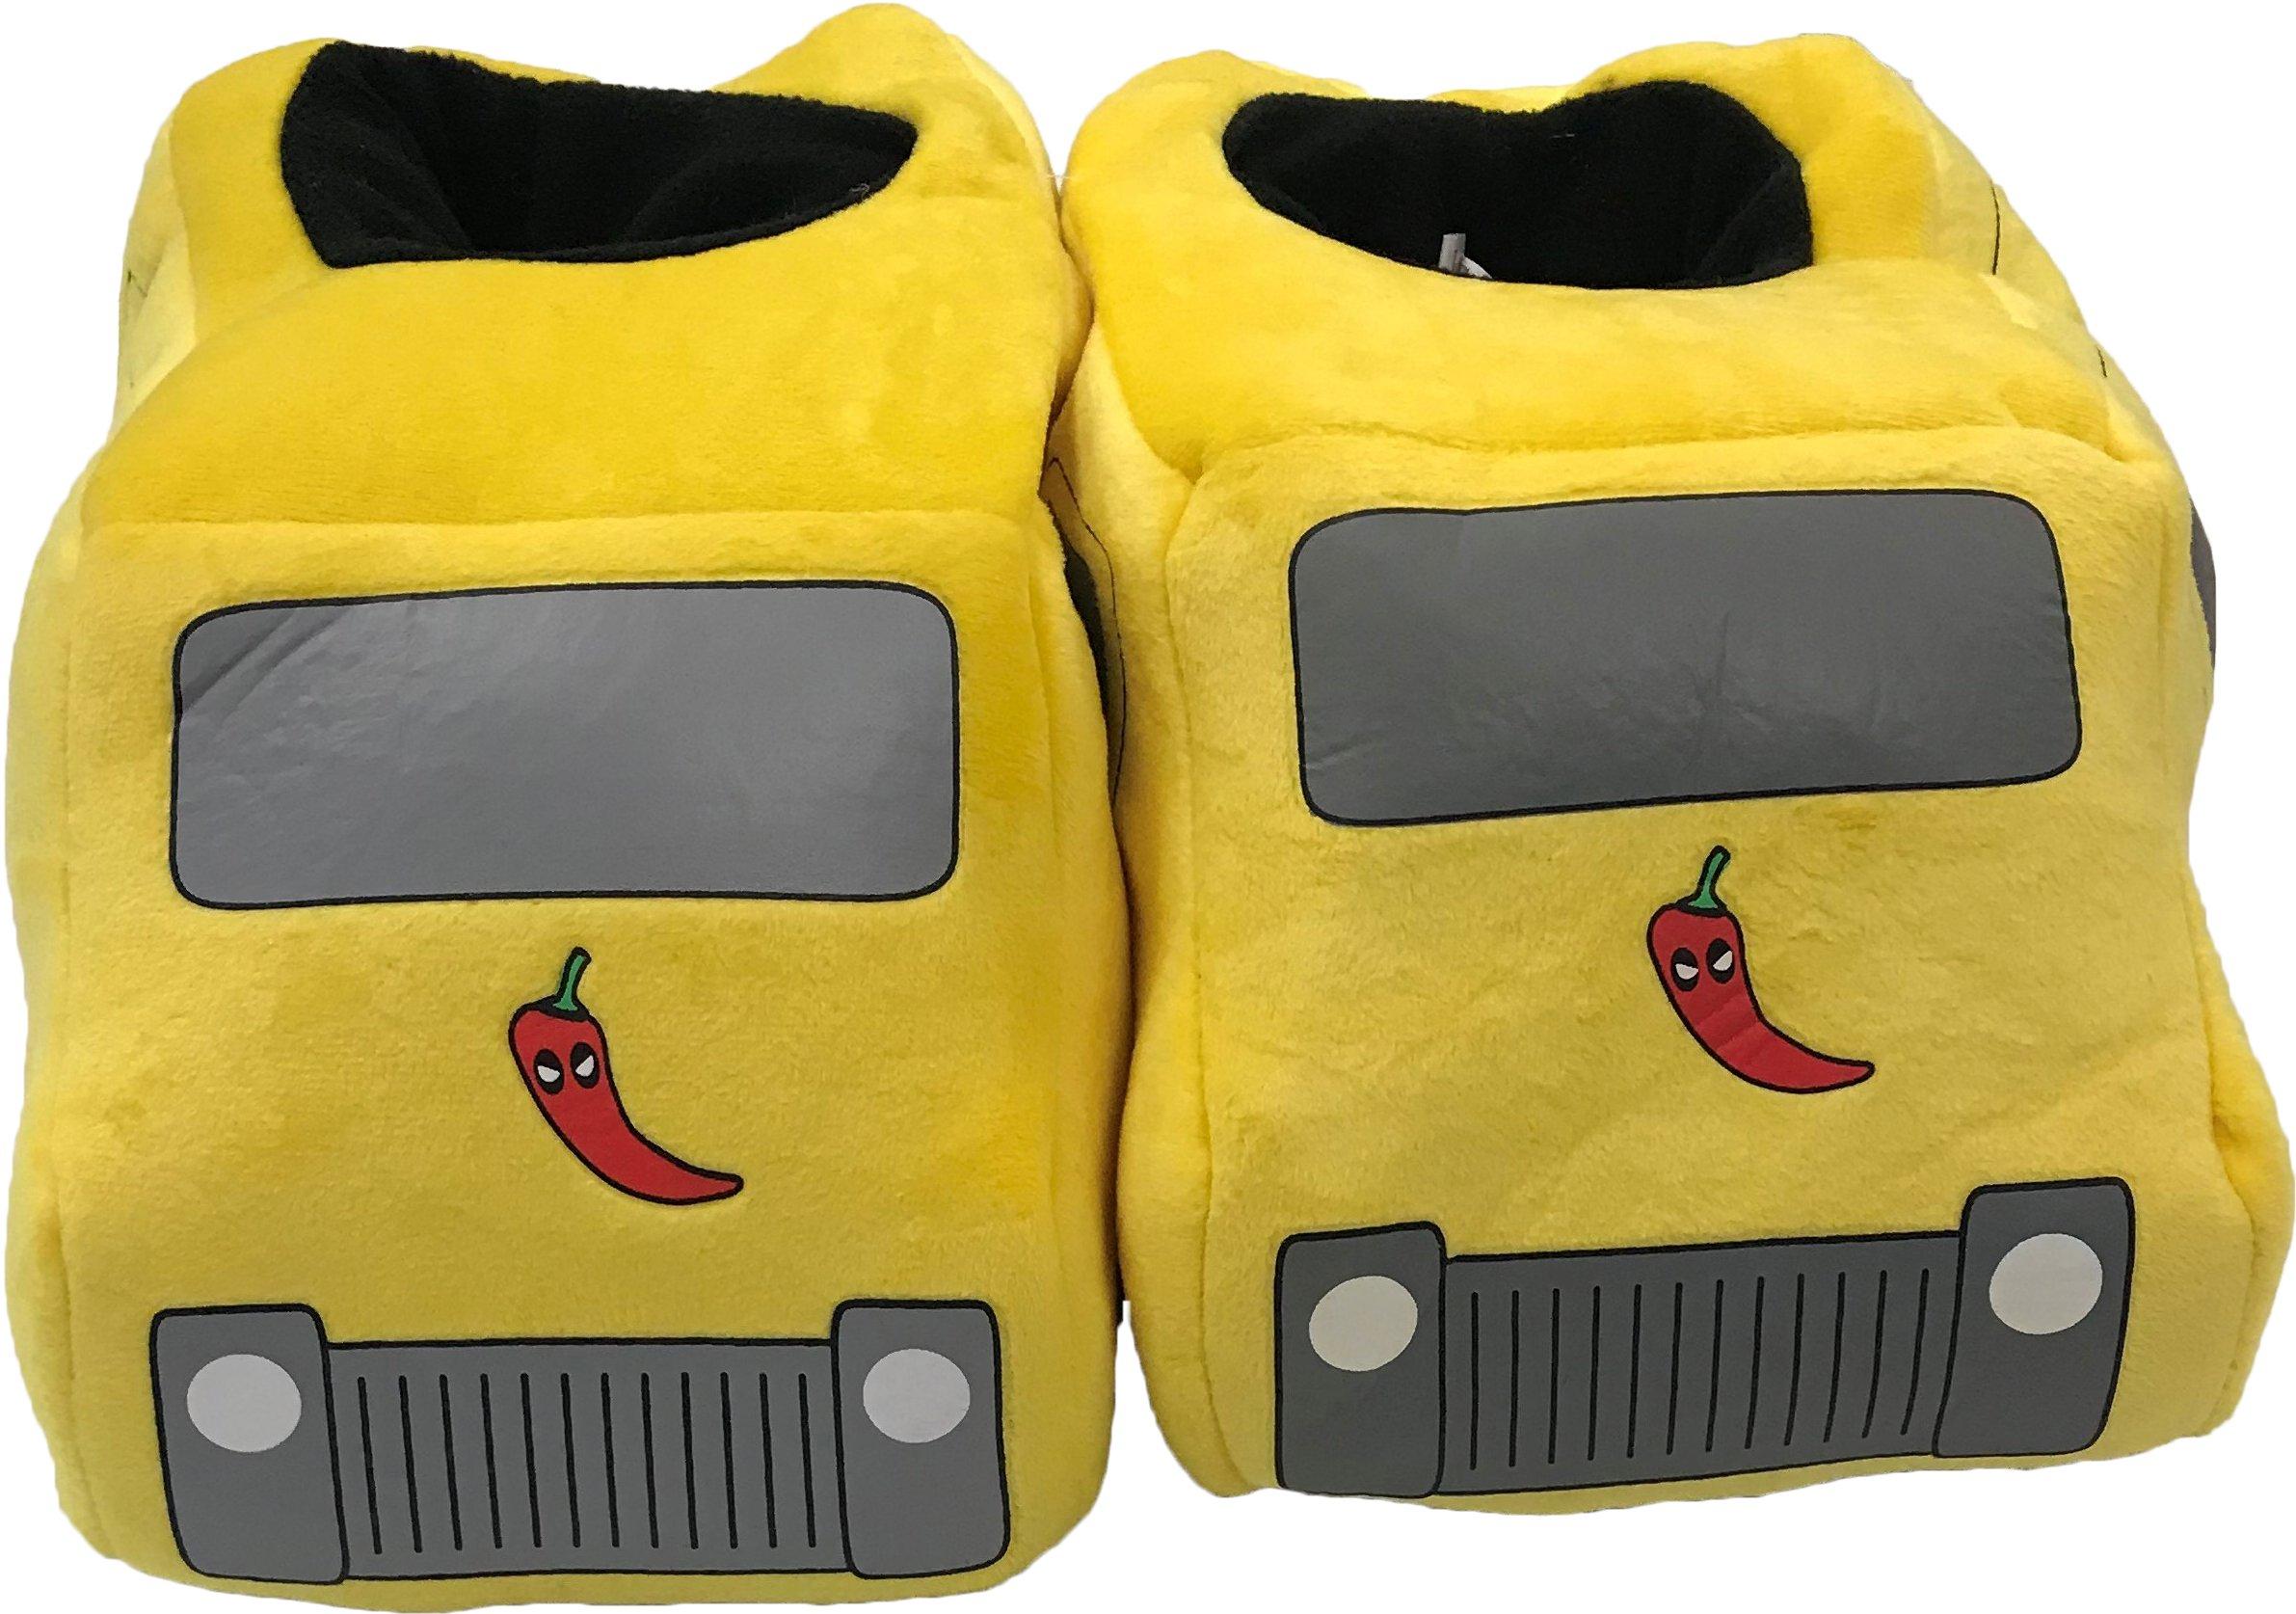 deadpool slippers